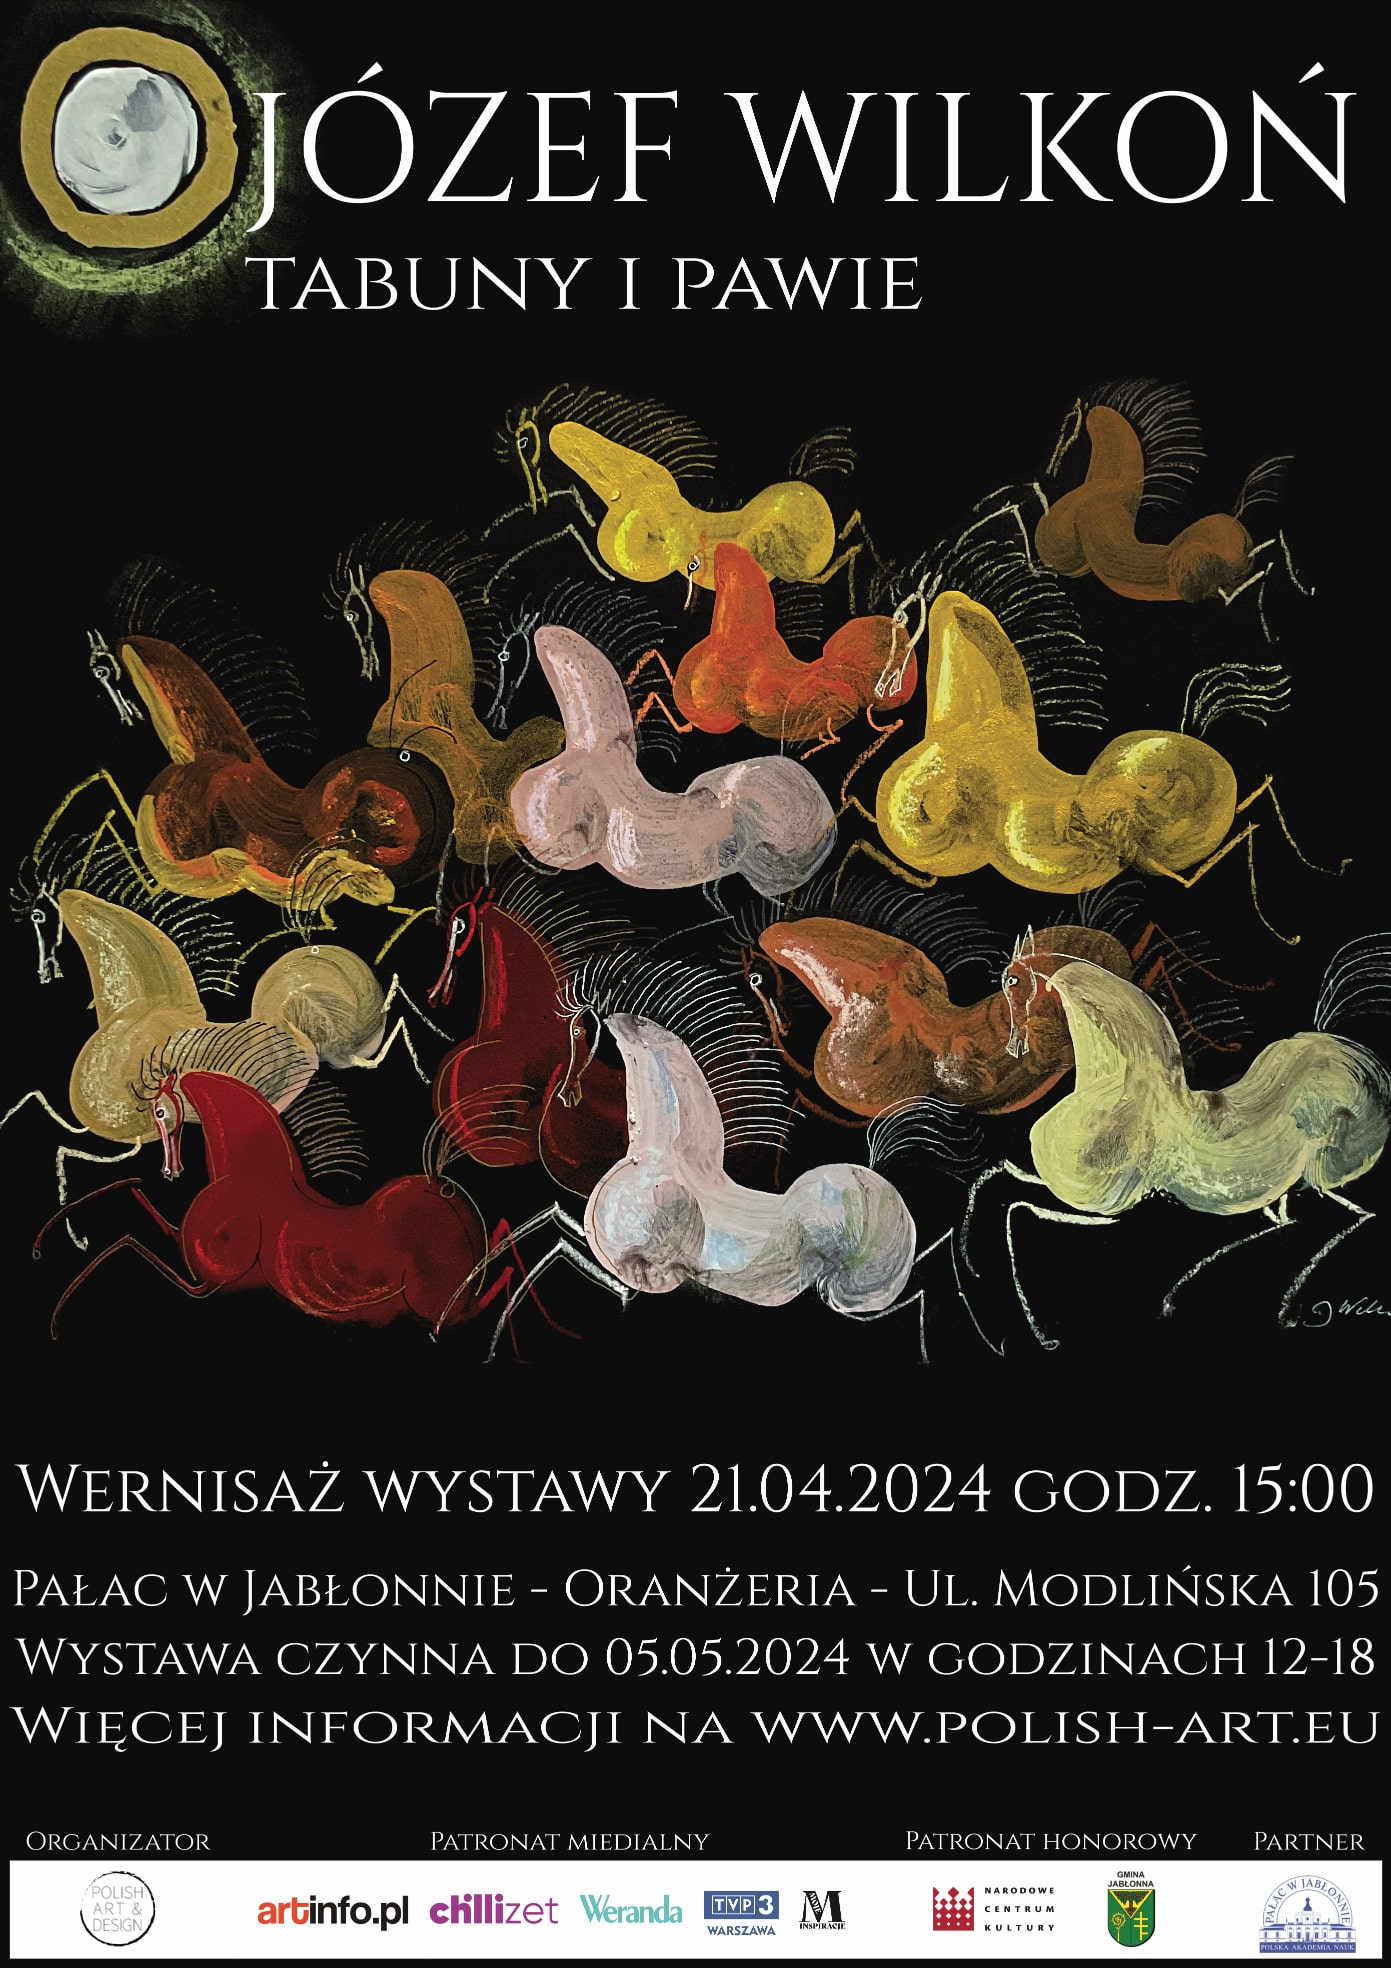 galeria-polish-art-jozef-wilkon-tabuny-i-pawie-wystawa-2024 light.jpg (452 KB)